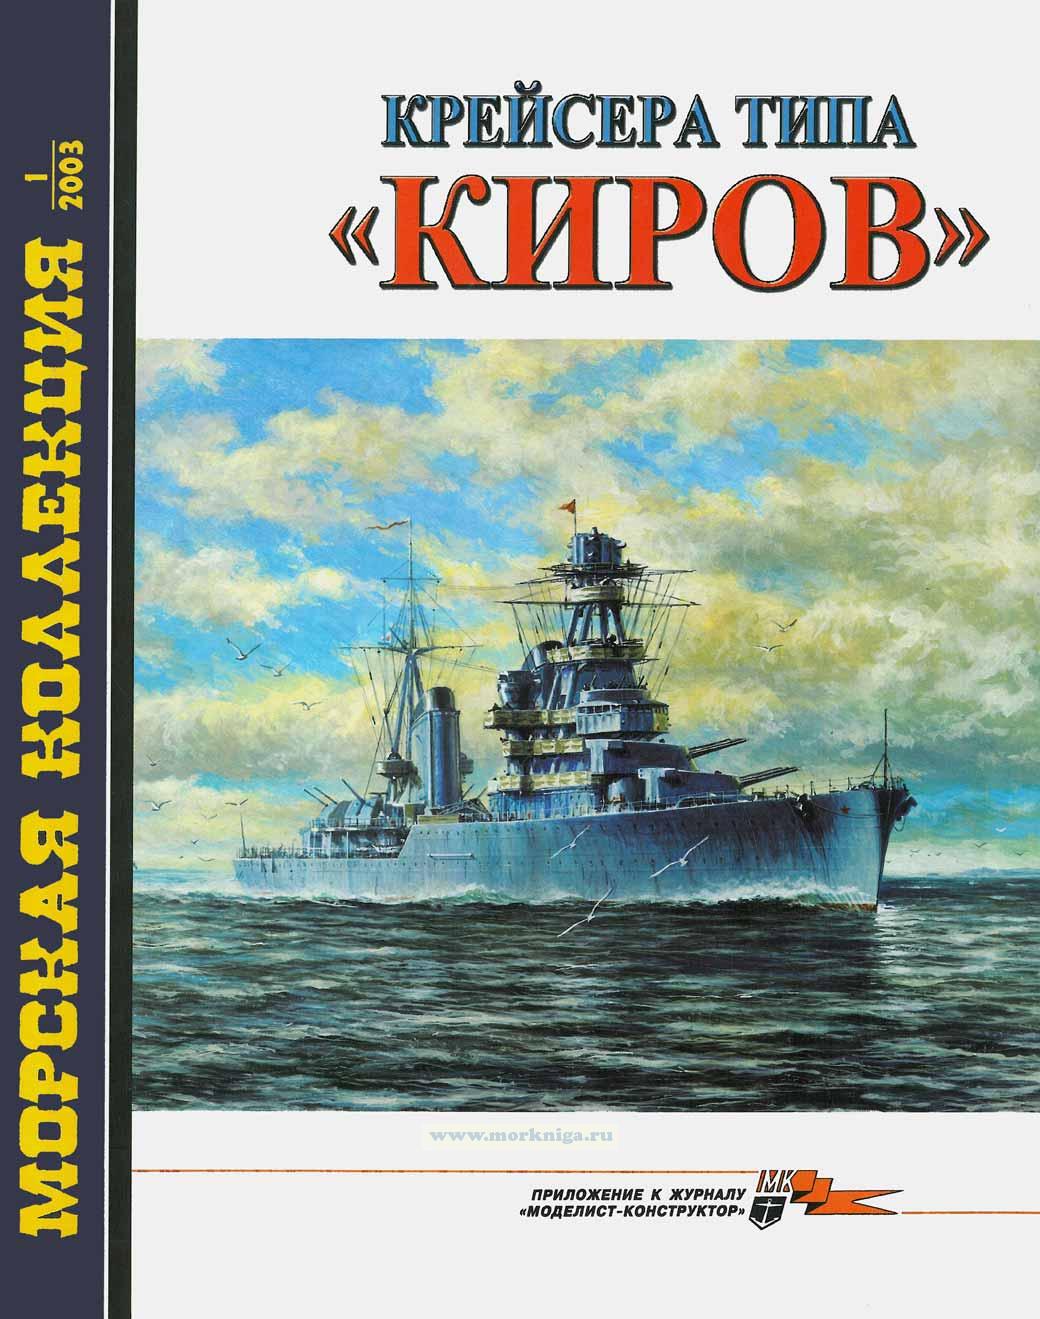 Крейсера типа "КИРОВ". Морская коллекция №1 (2003)